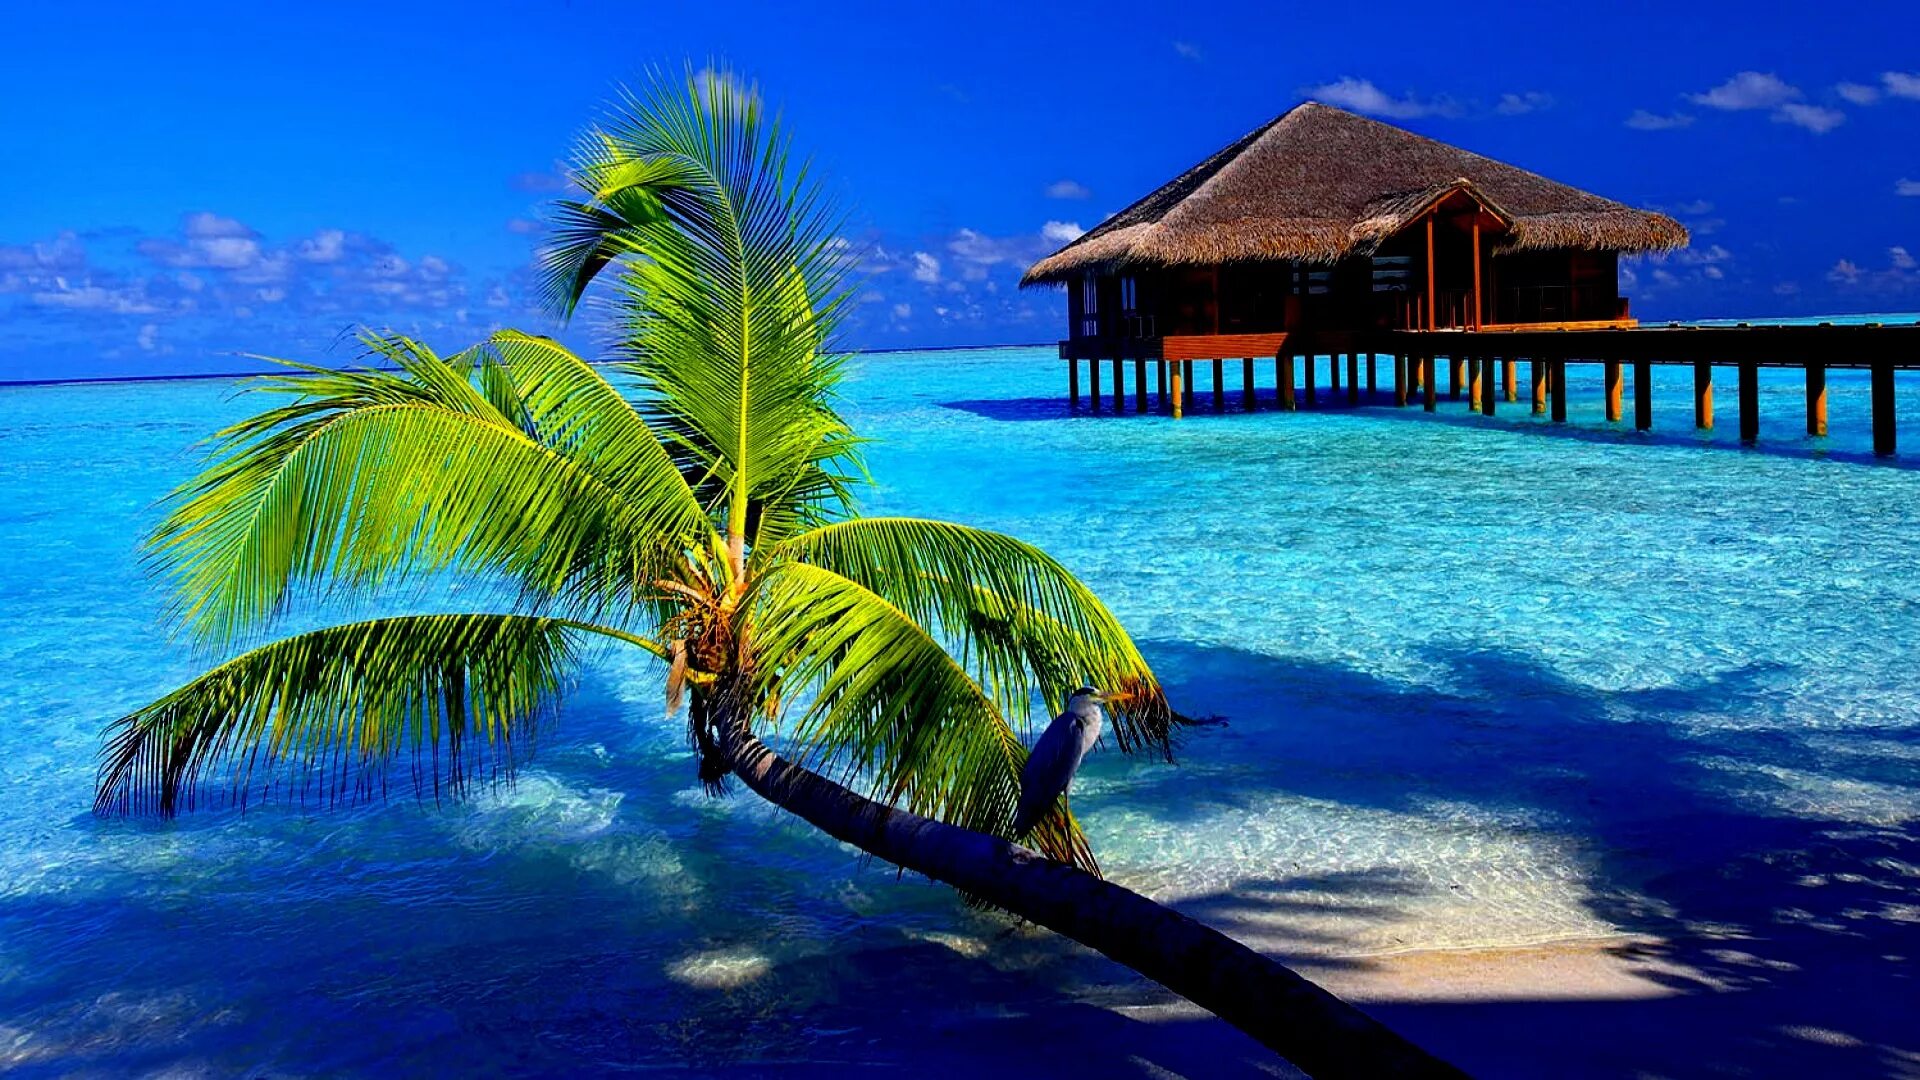 Обои планшет 10 дюймов. Парадиз остров Карибского моря. Бунгало на Мальдивах. Райский пляж. Заставка море.